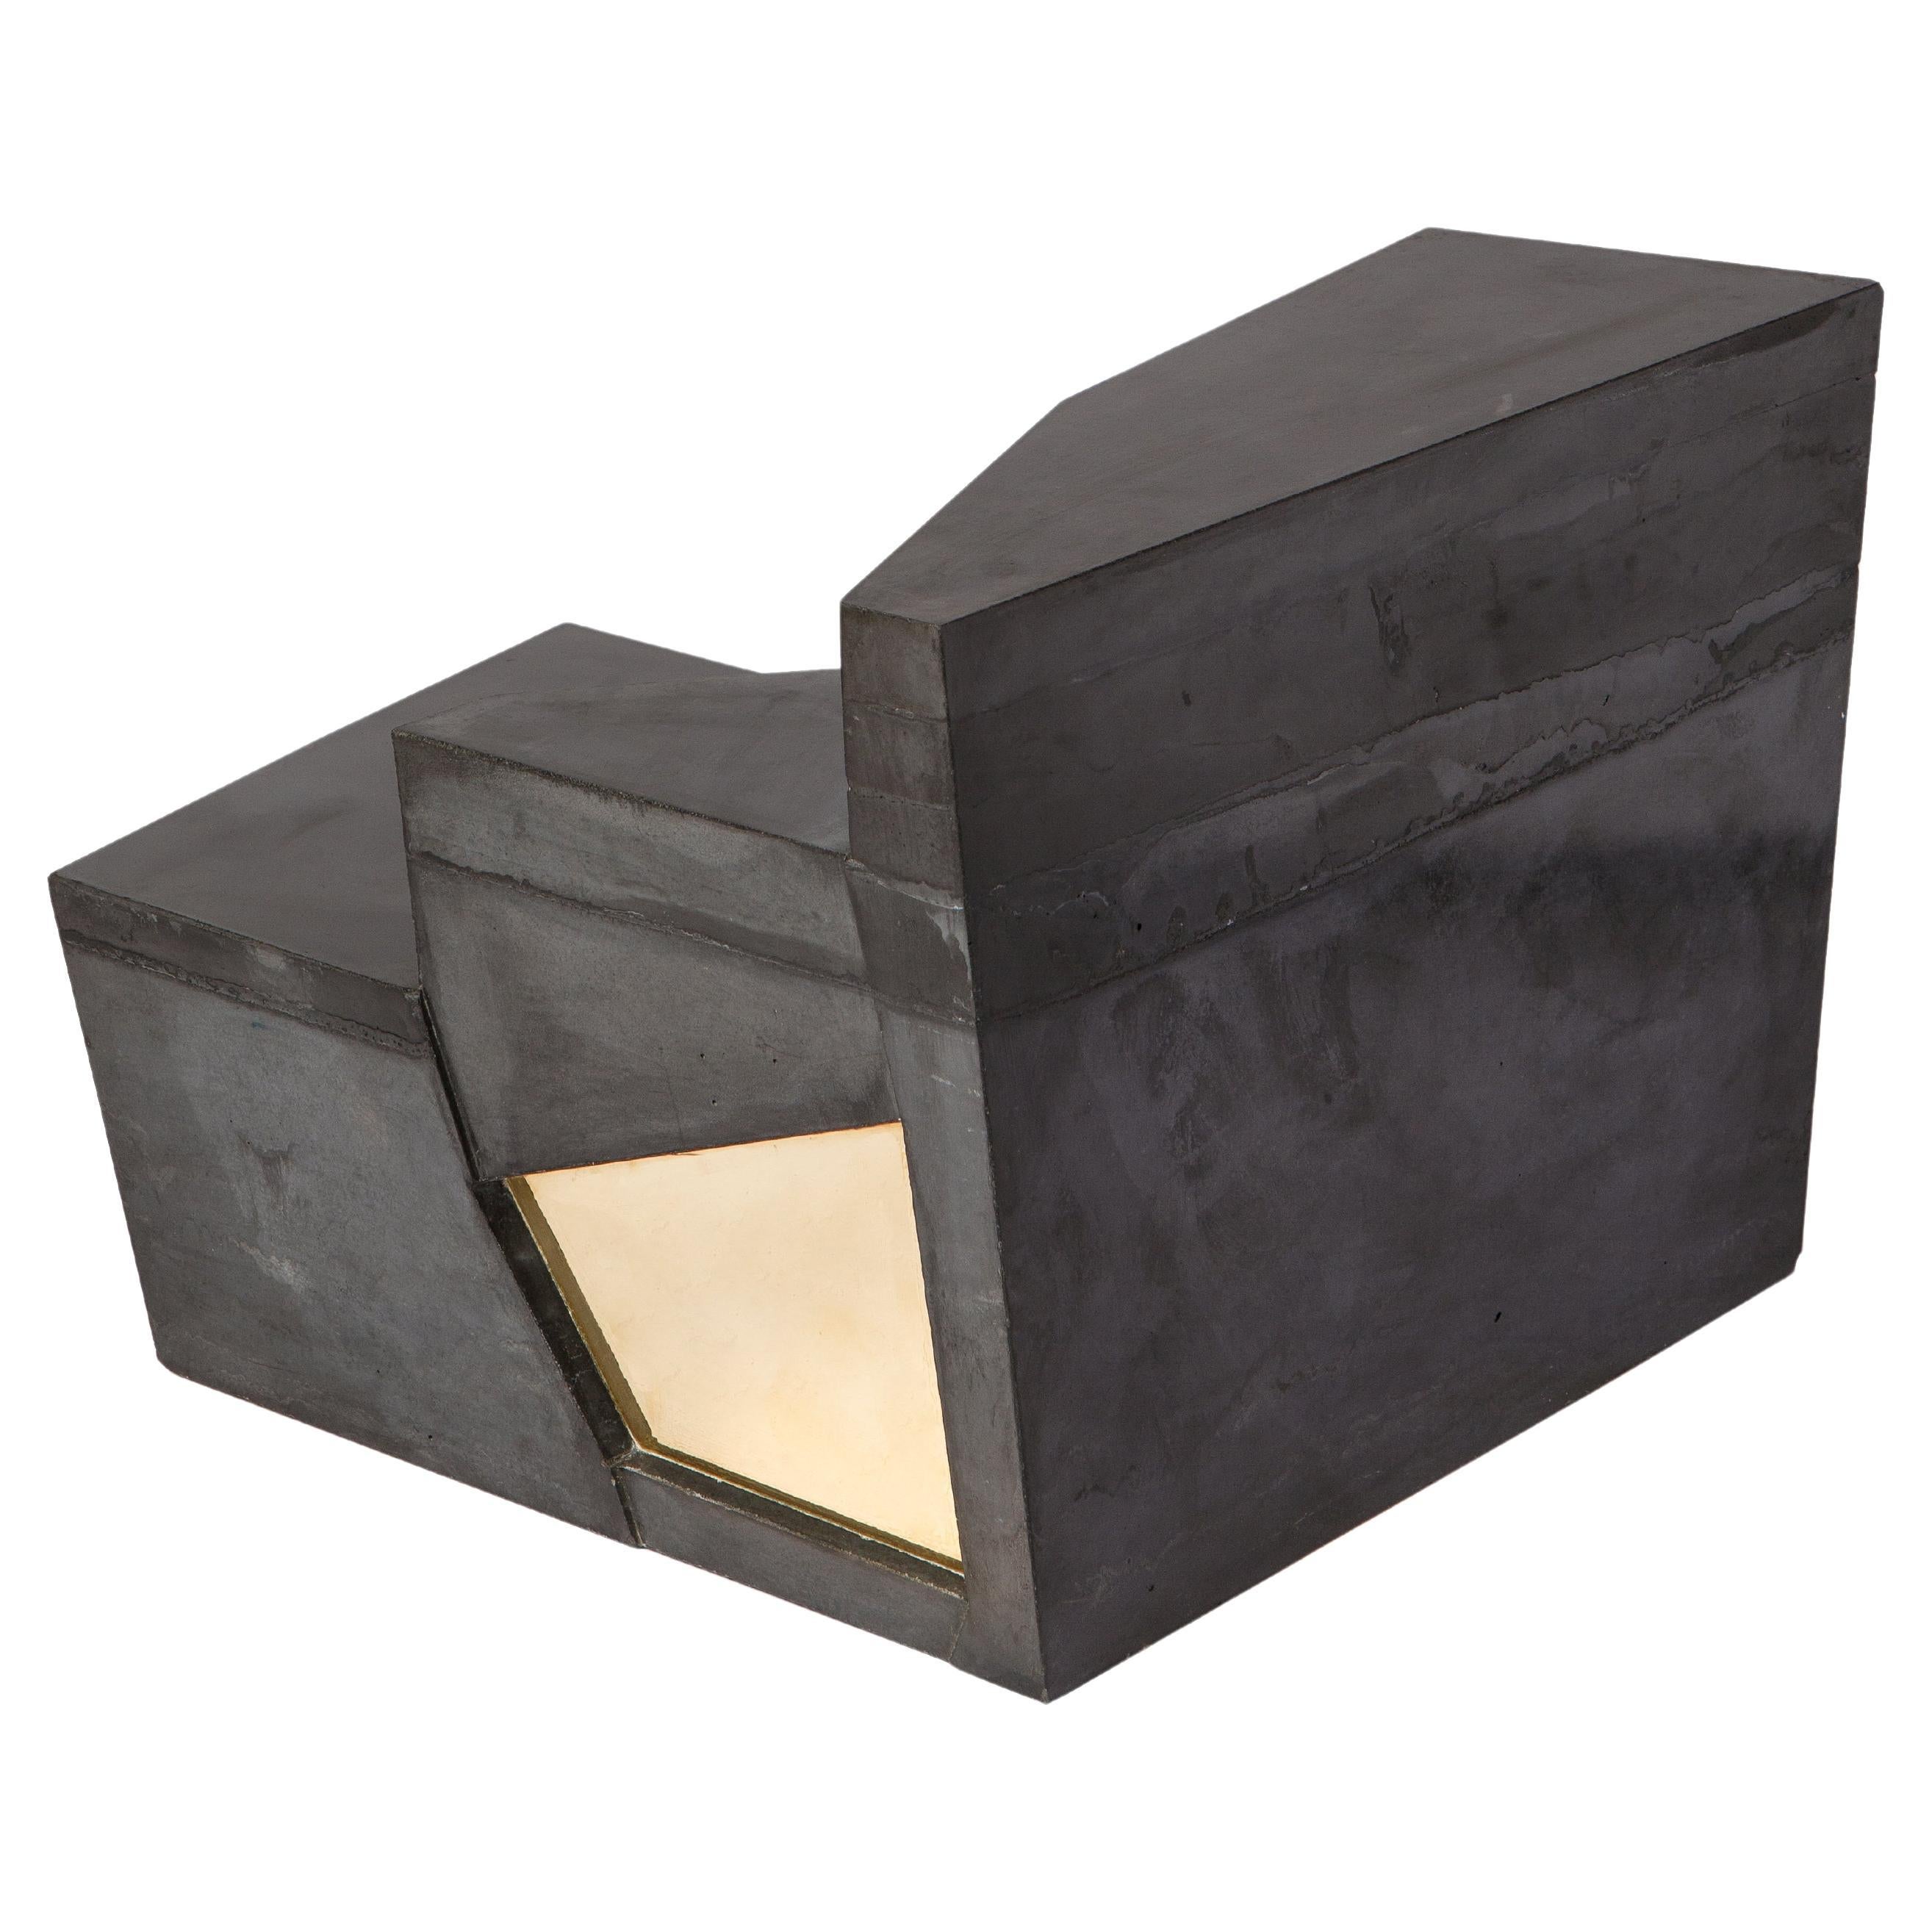 Brass-Concrete Sedimento Coffee Table by Duccio Maria Gambi for Delvis Unlimited For Sale